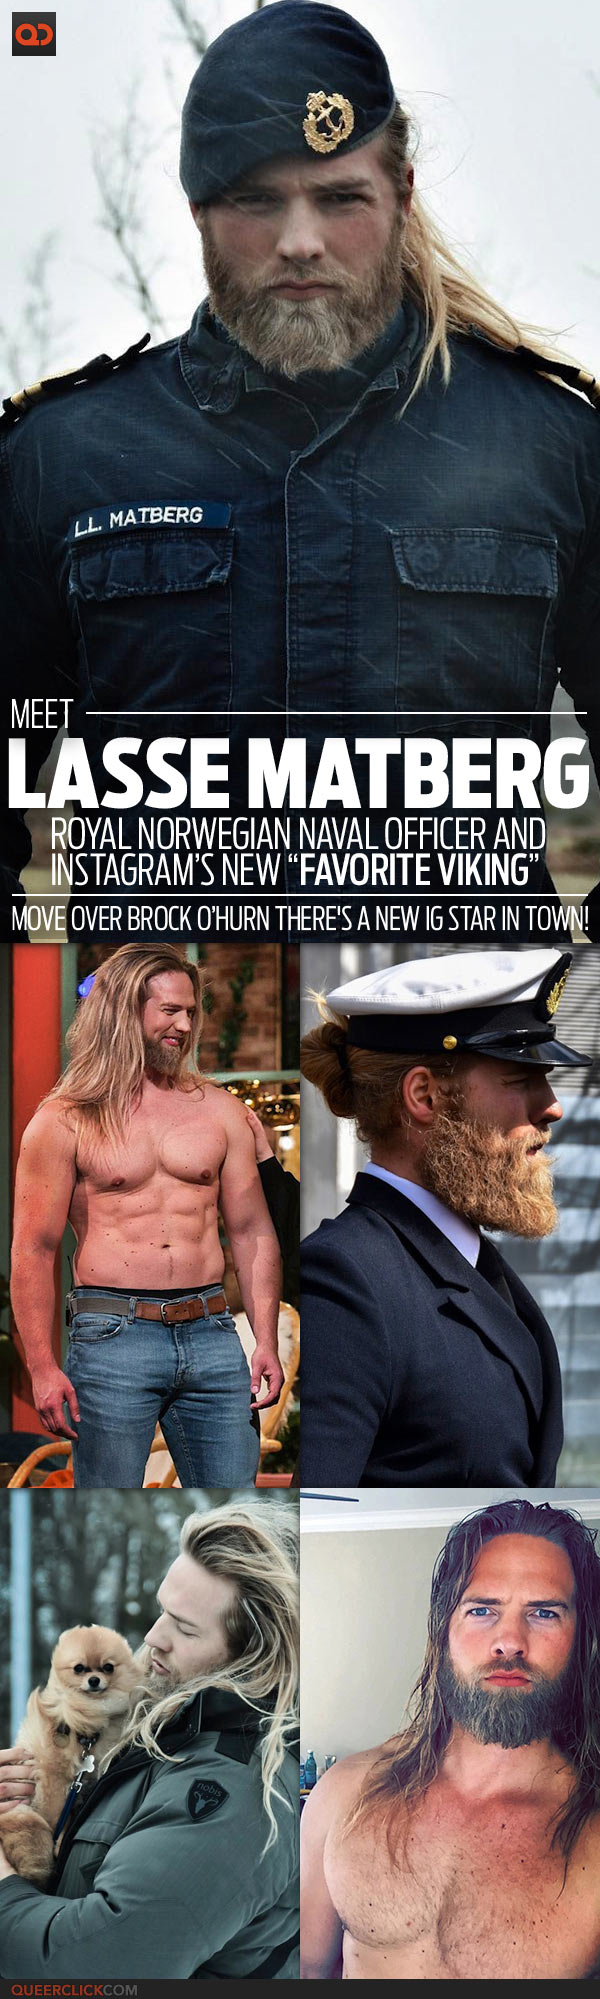 qc-crush-lasse_matberg_norwegian_naval_officer_instagram_favorite_viking-teaser